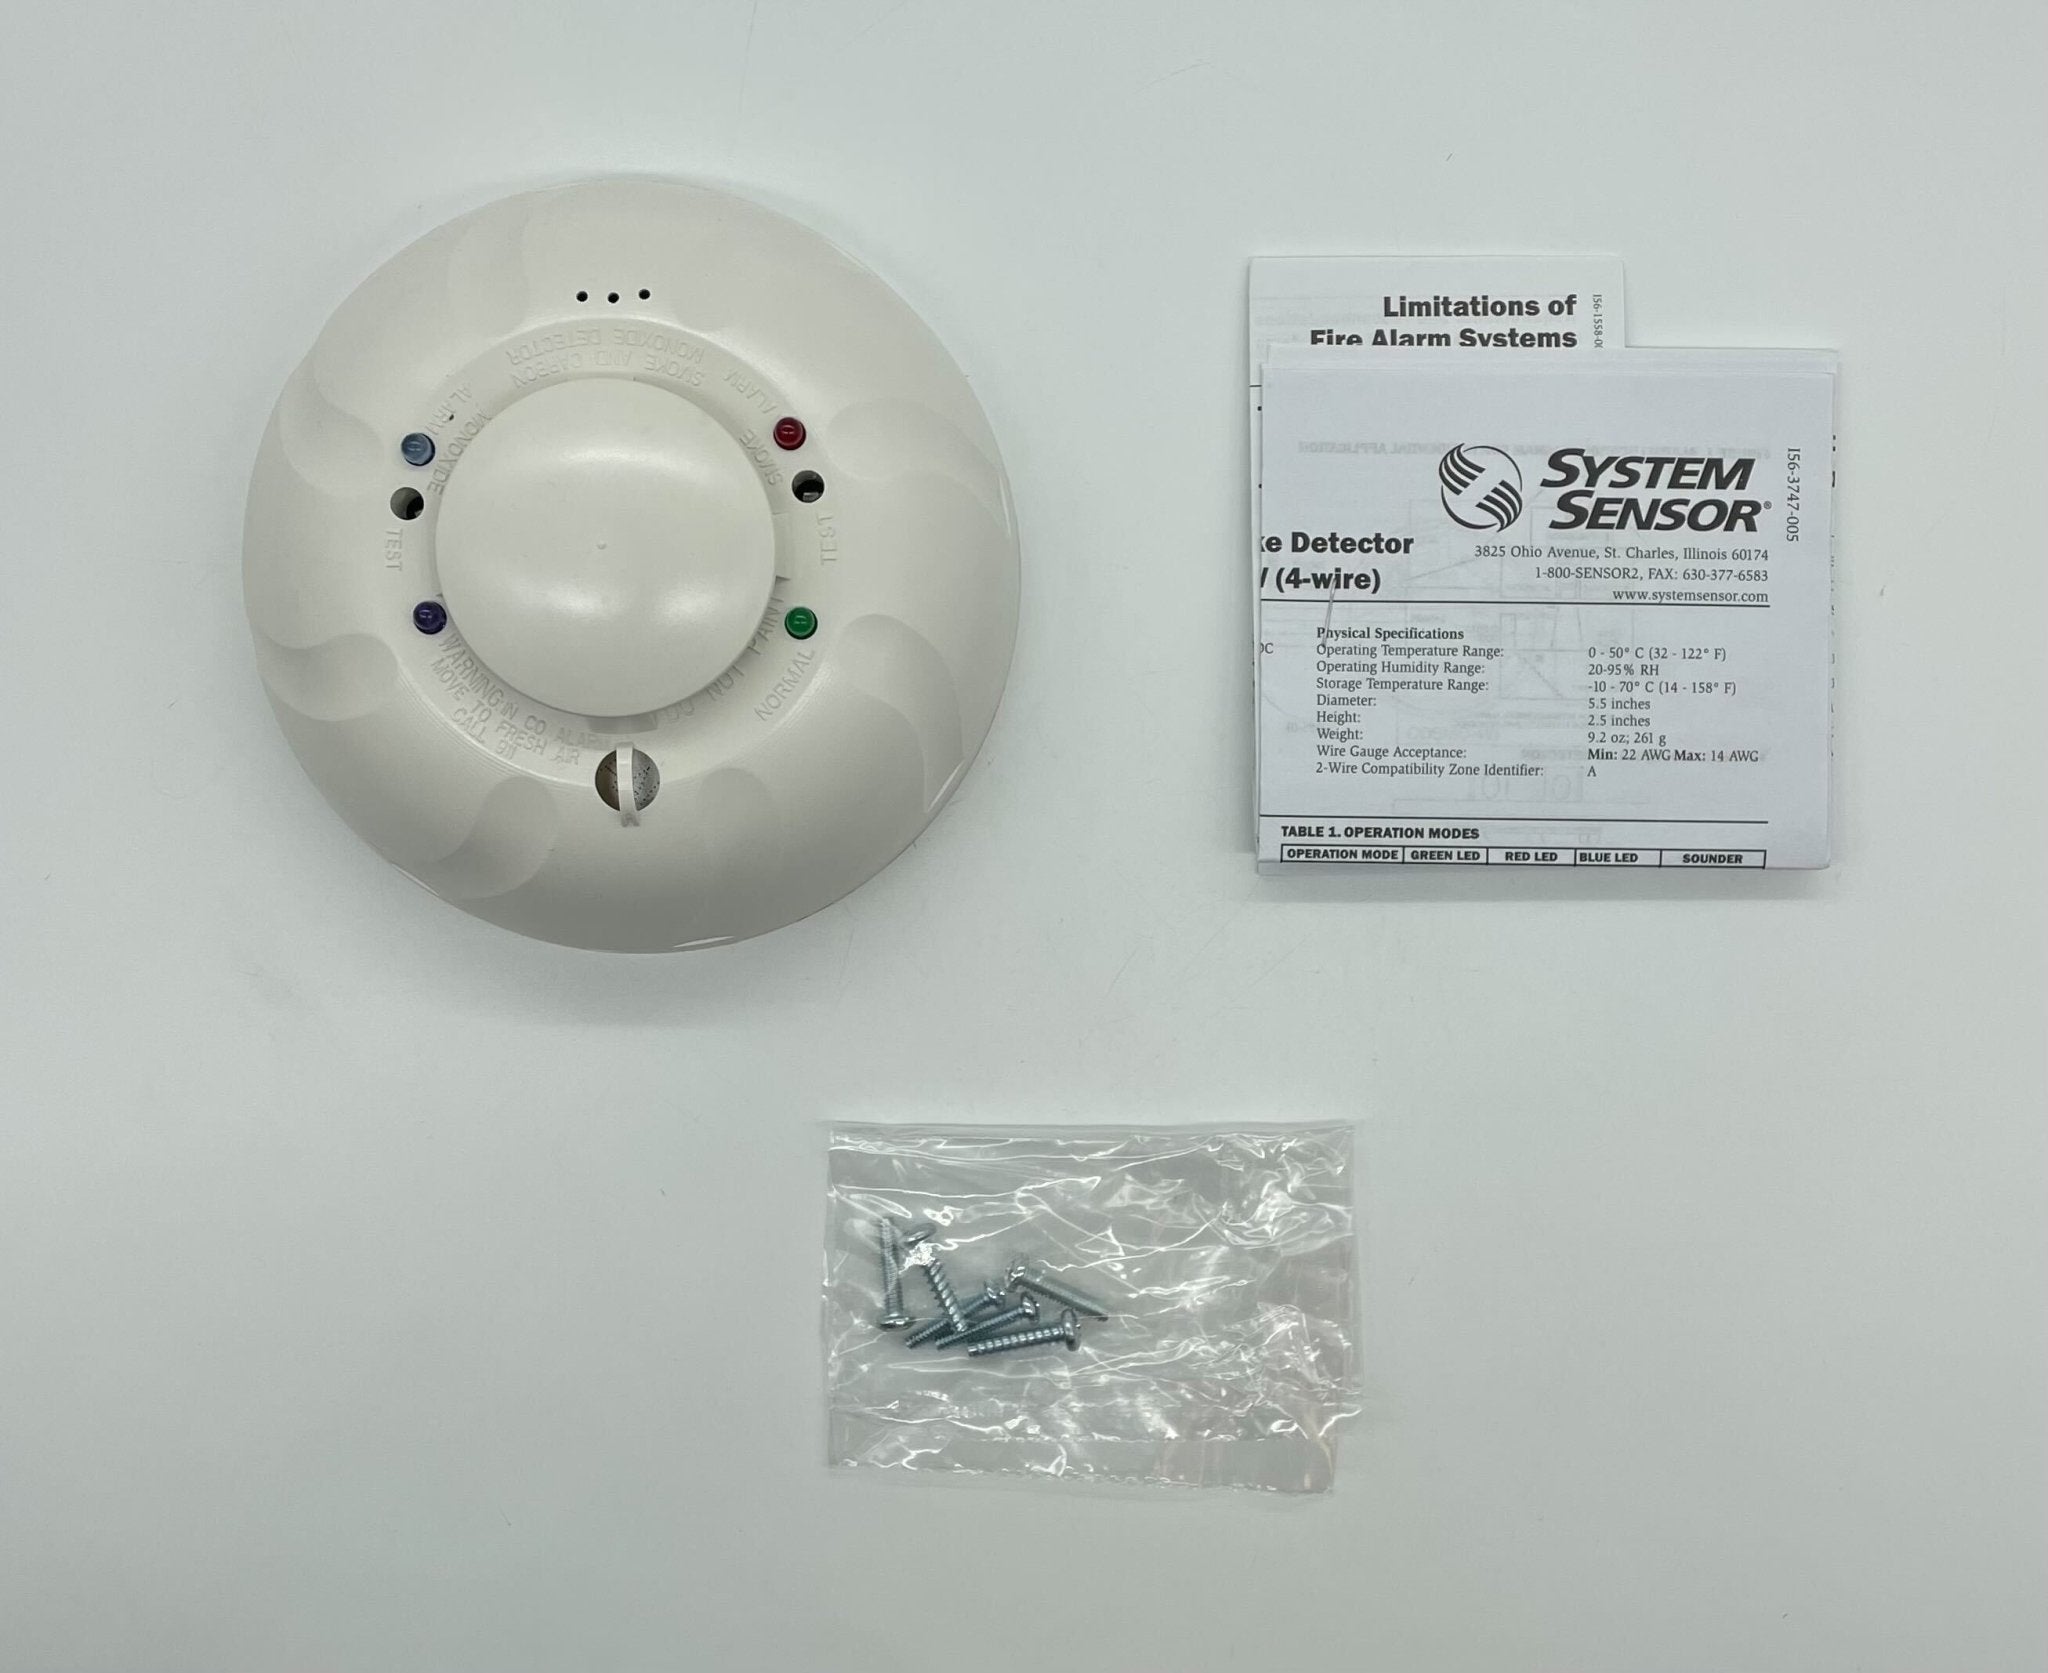 Firelite COSMO-4W - The Fire Alarm Supplier